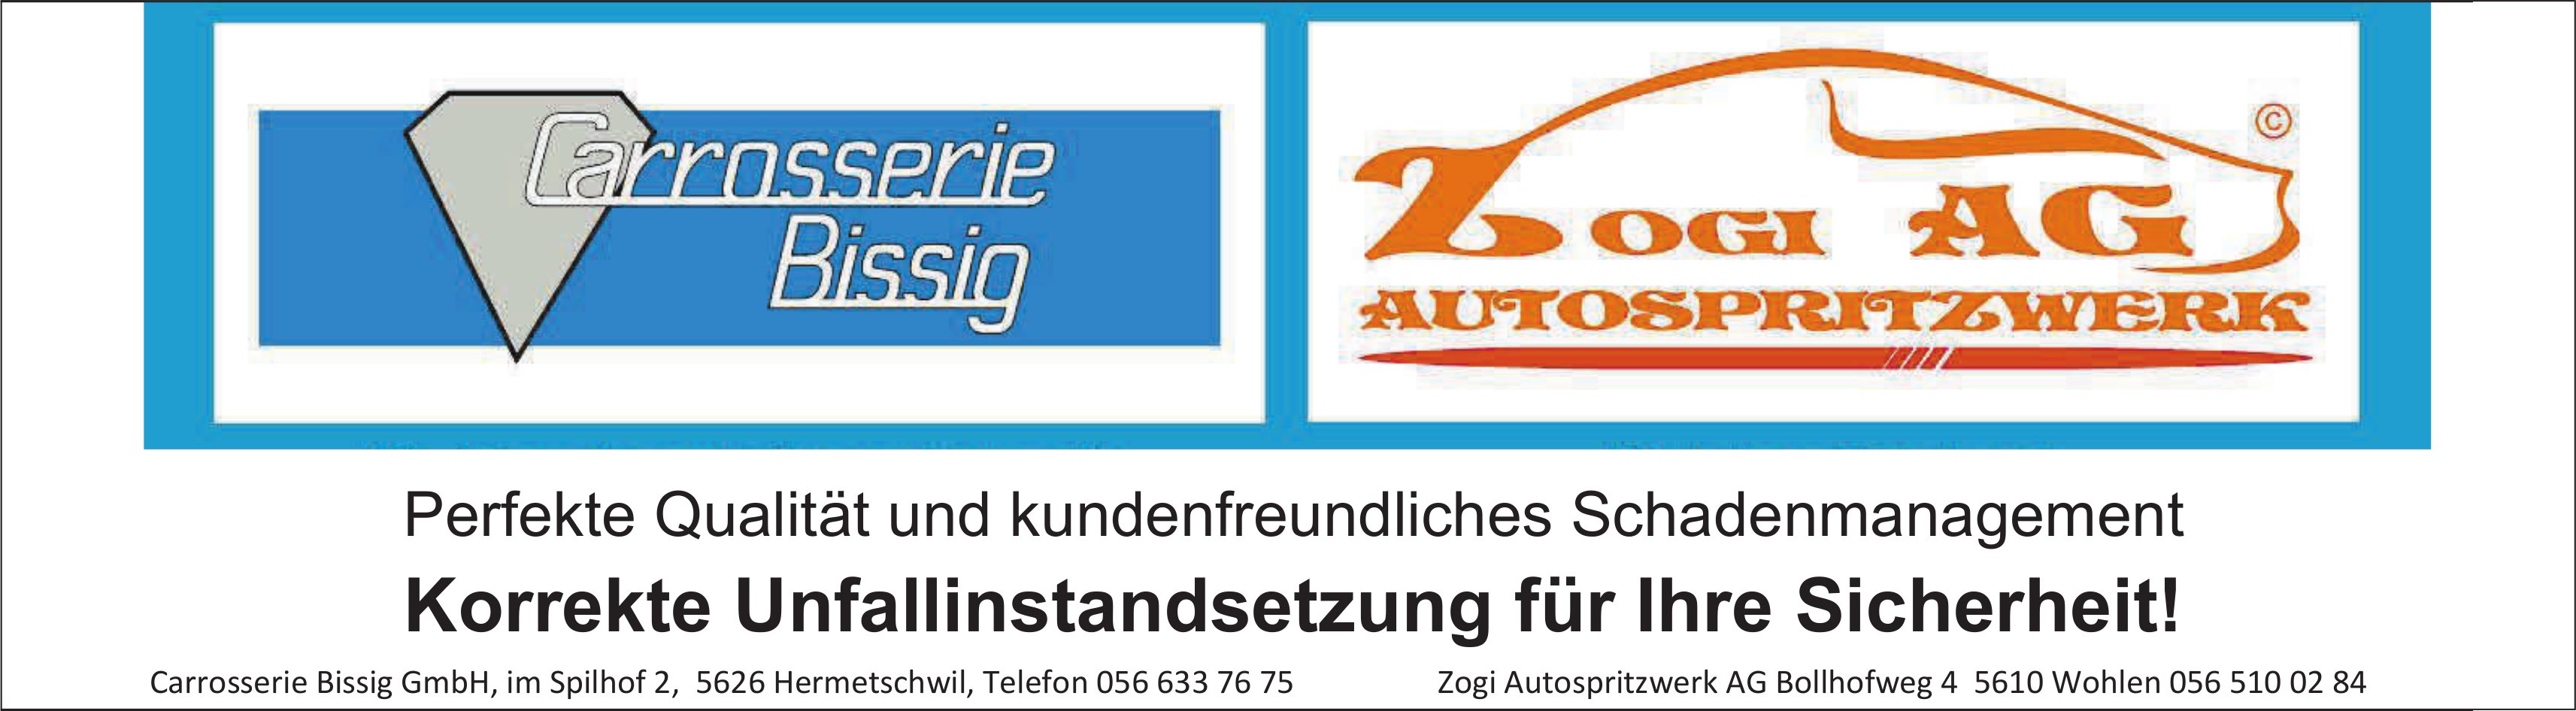 Carrosserie Bissig GmbH und Zogi AG, Hermetschwil - Korrekte Unfallinstandsetzung für Ihre Sicherheit!